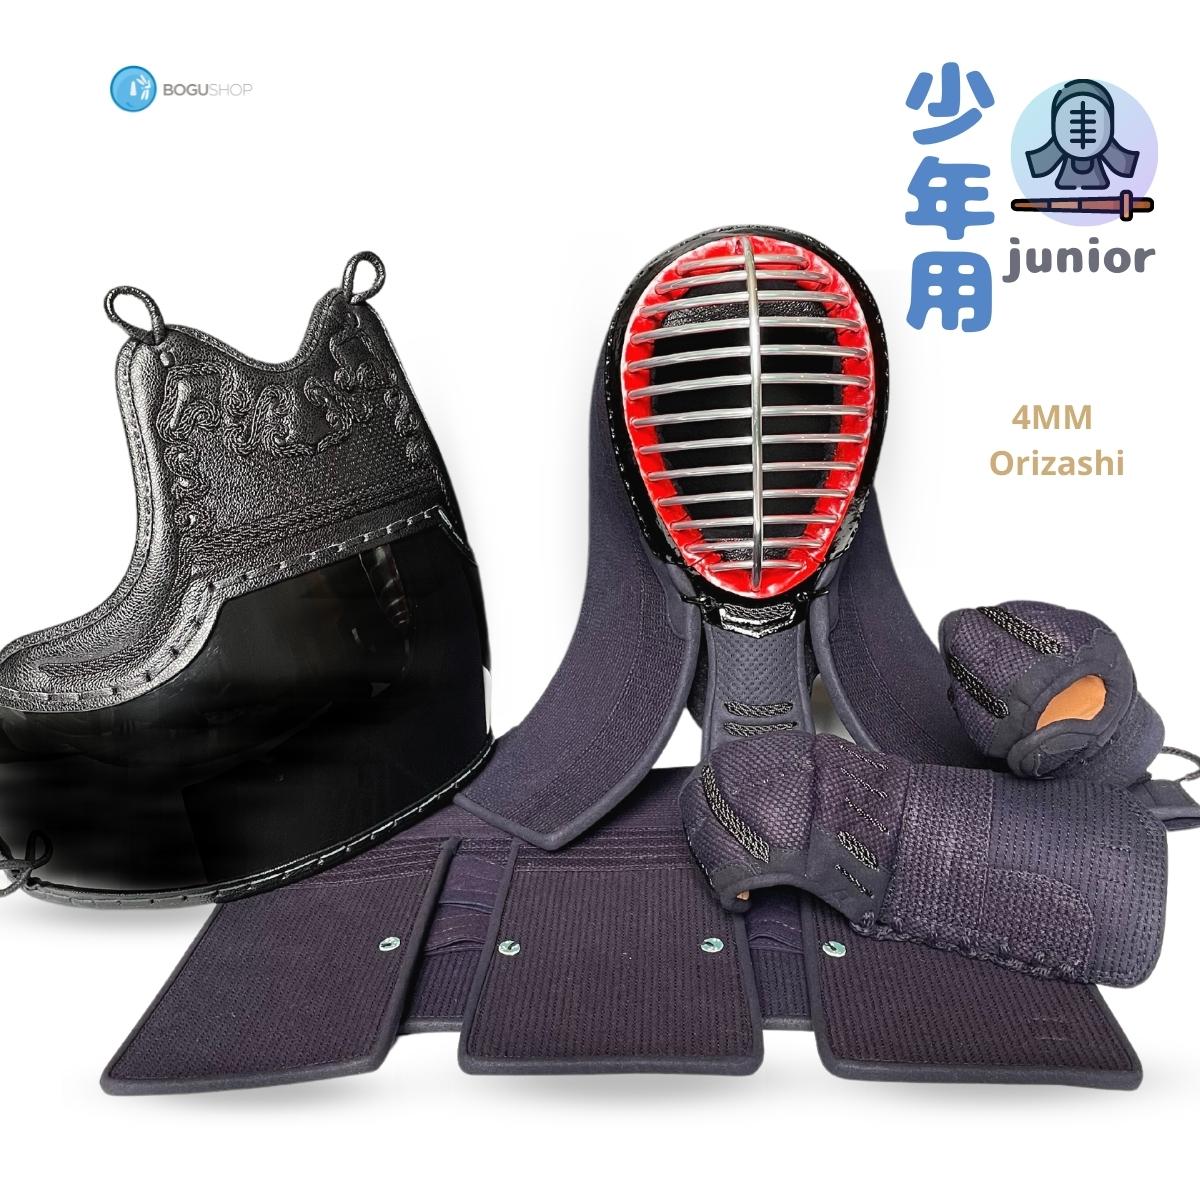 [Orizashi / Clarino Leather] 4MM Junior Bogu Set